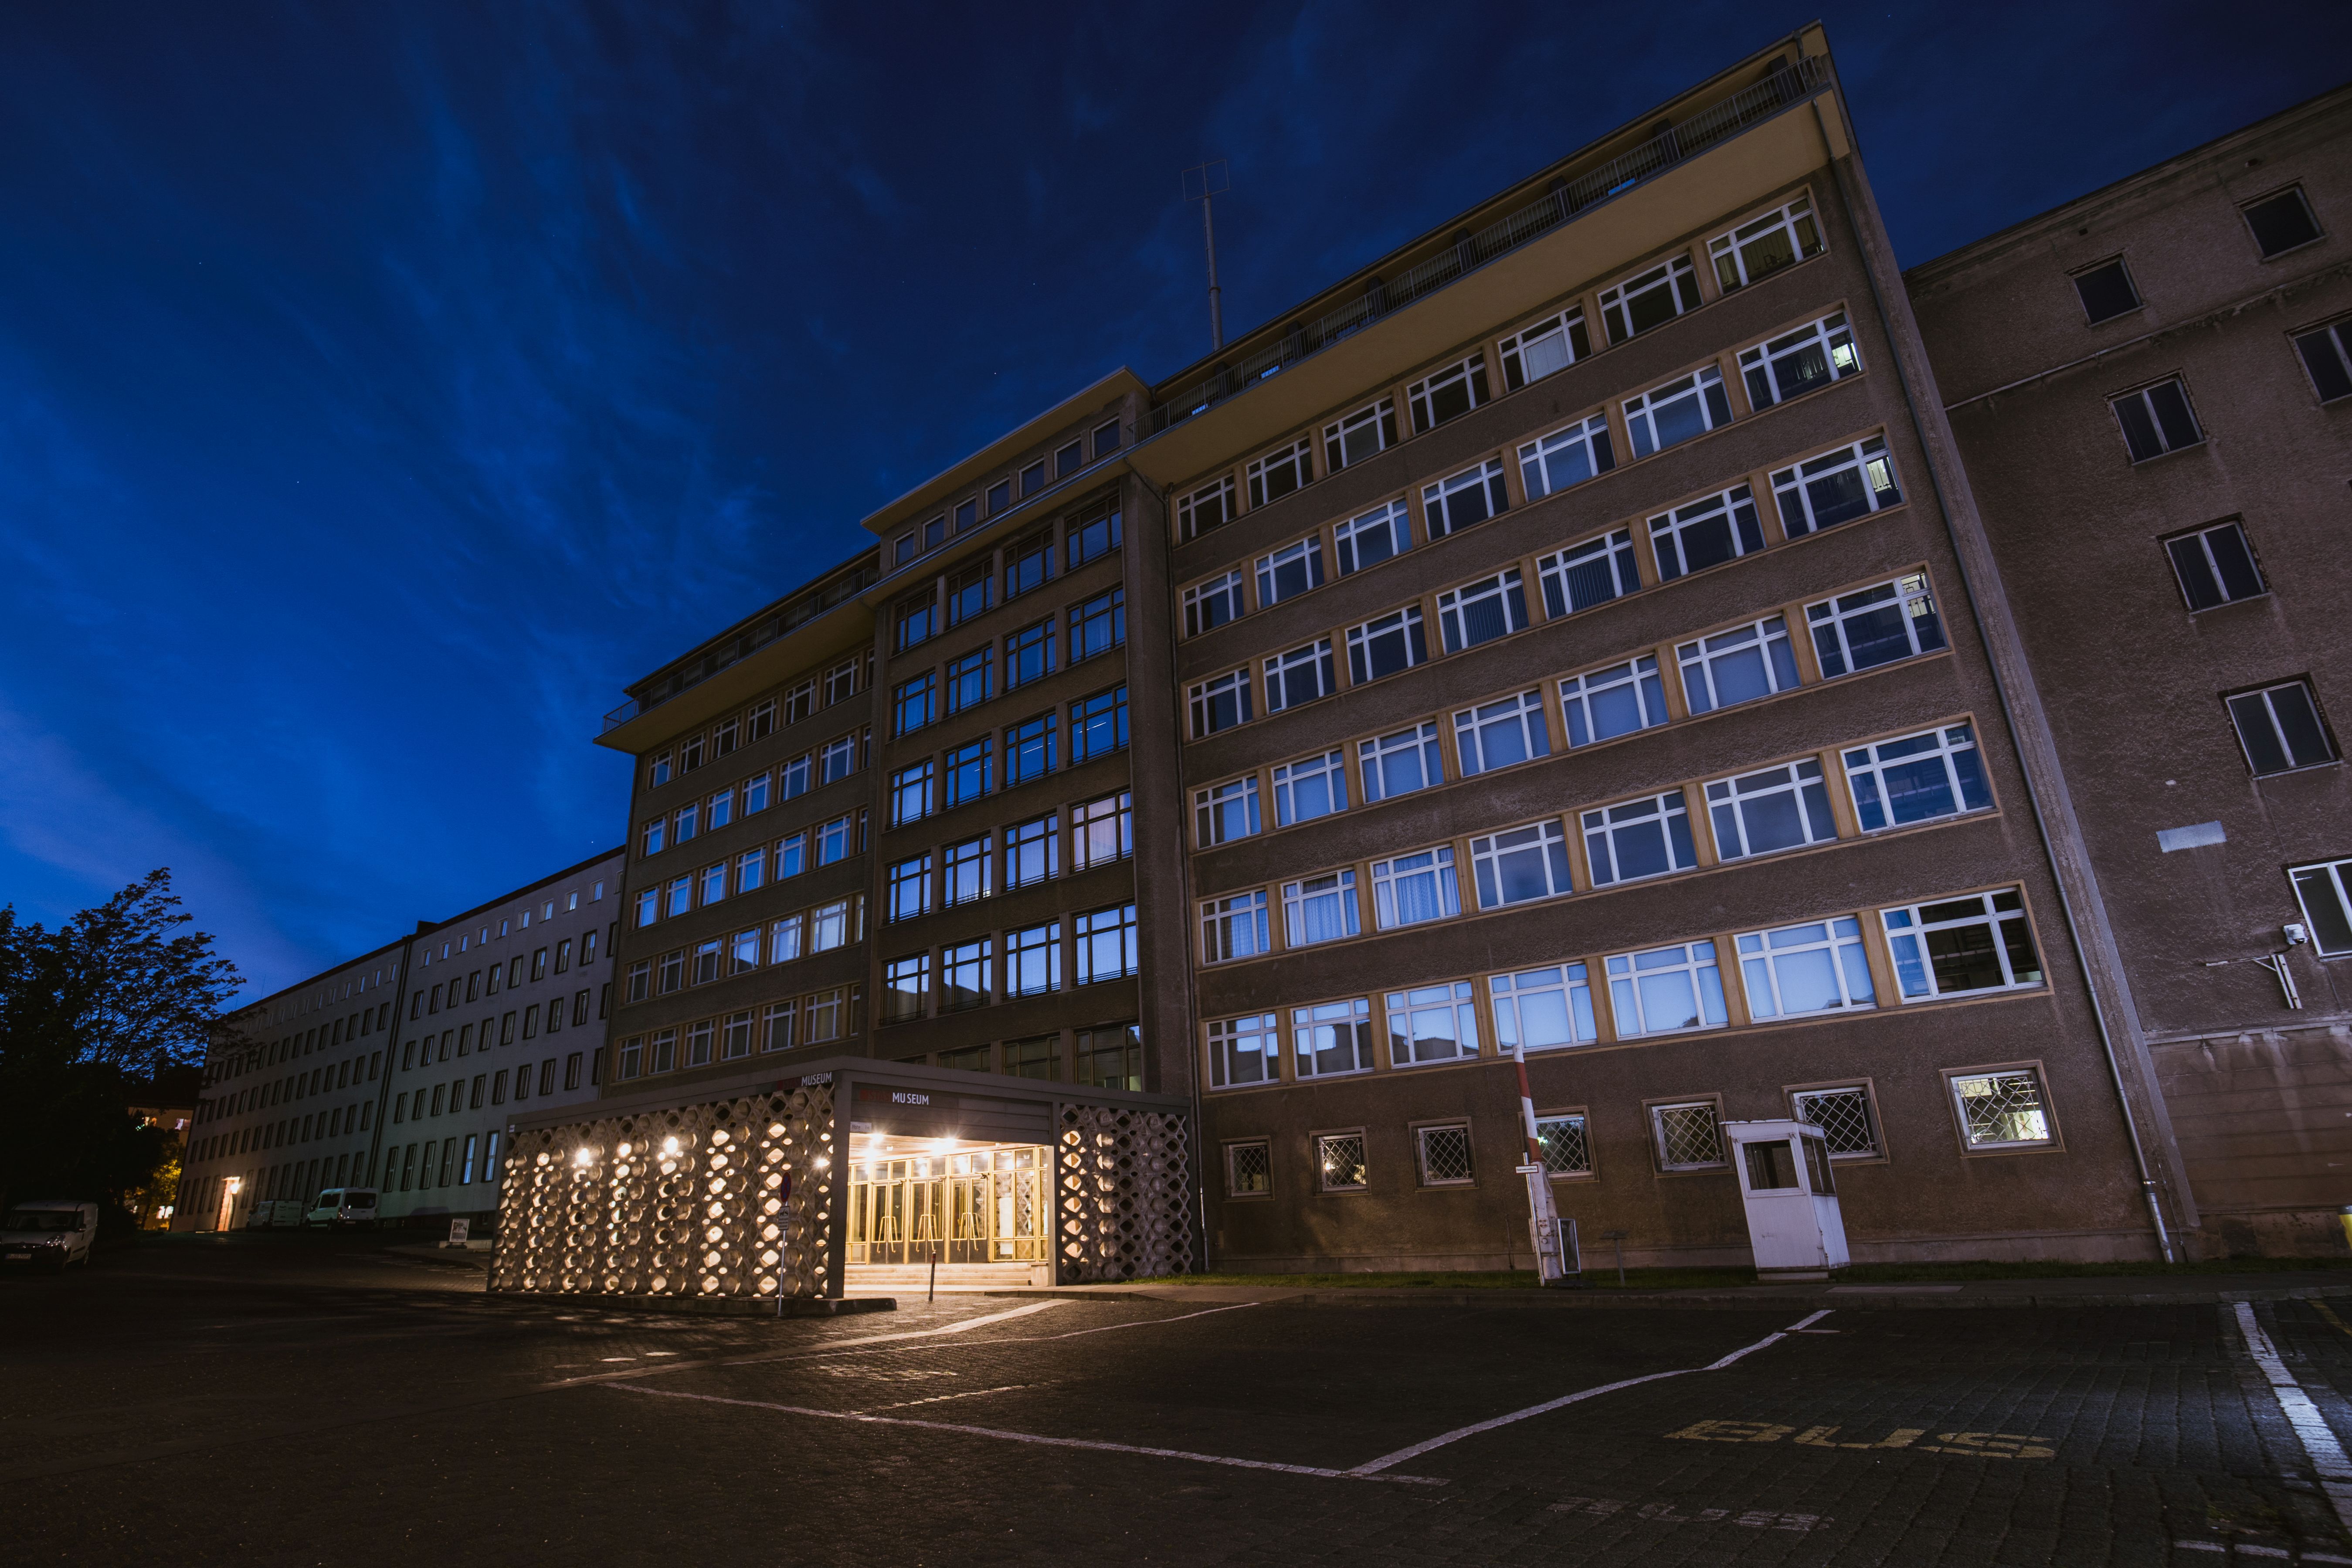 Außenansicht der Stasi-Zentrale - Campus für Demokratie bei Nacht